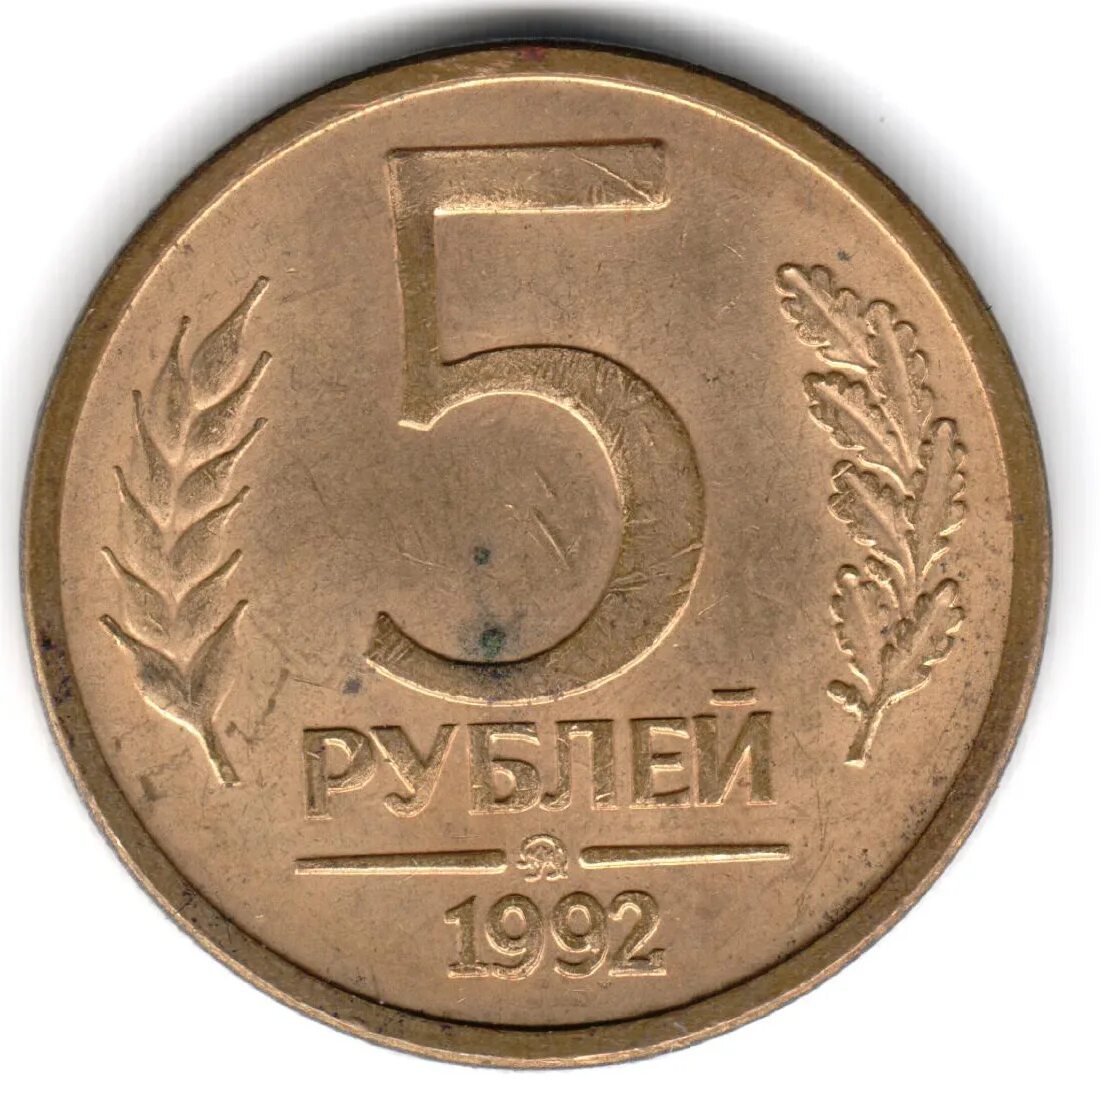 22 5 в рублях. 5 Рублей 1992 года. Монета 5 рублей 1992. Монеты СССР 1992. 5 Руб 1992 года.